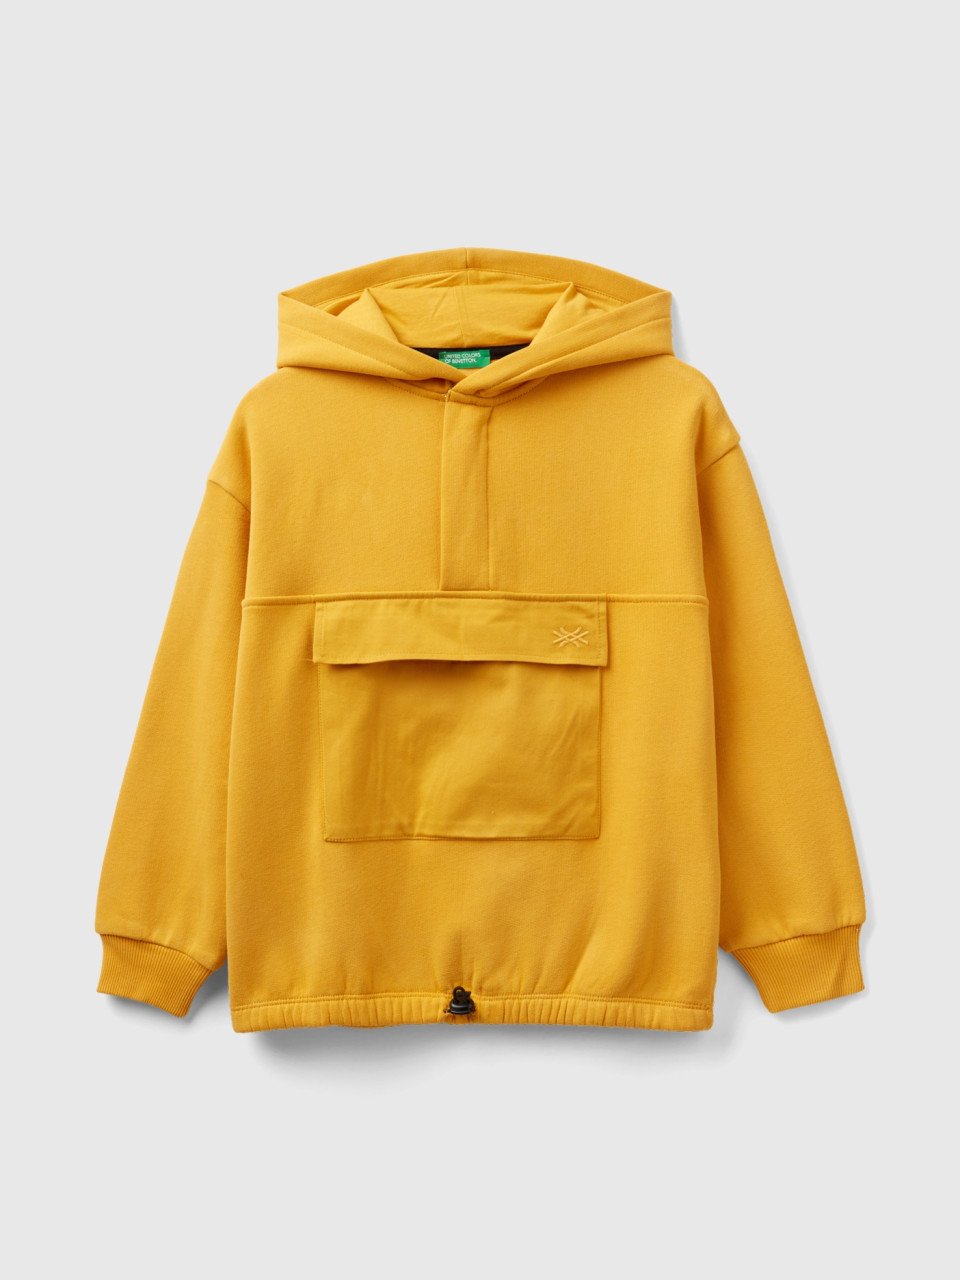 Benetton, Warmer Sweater Mit Tasche Und Kapuze, Gelb, male